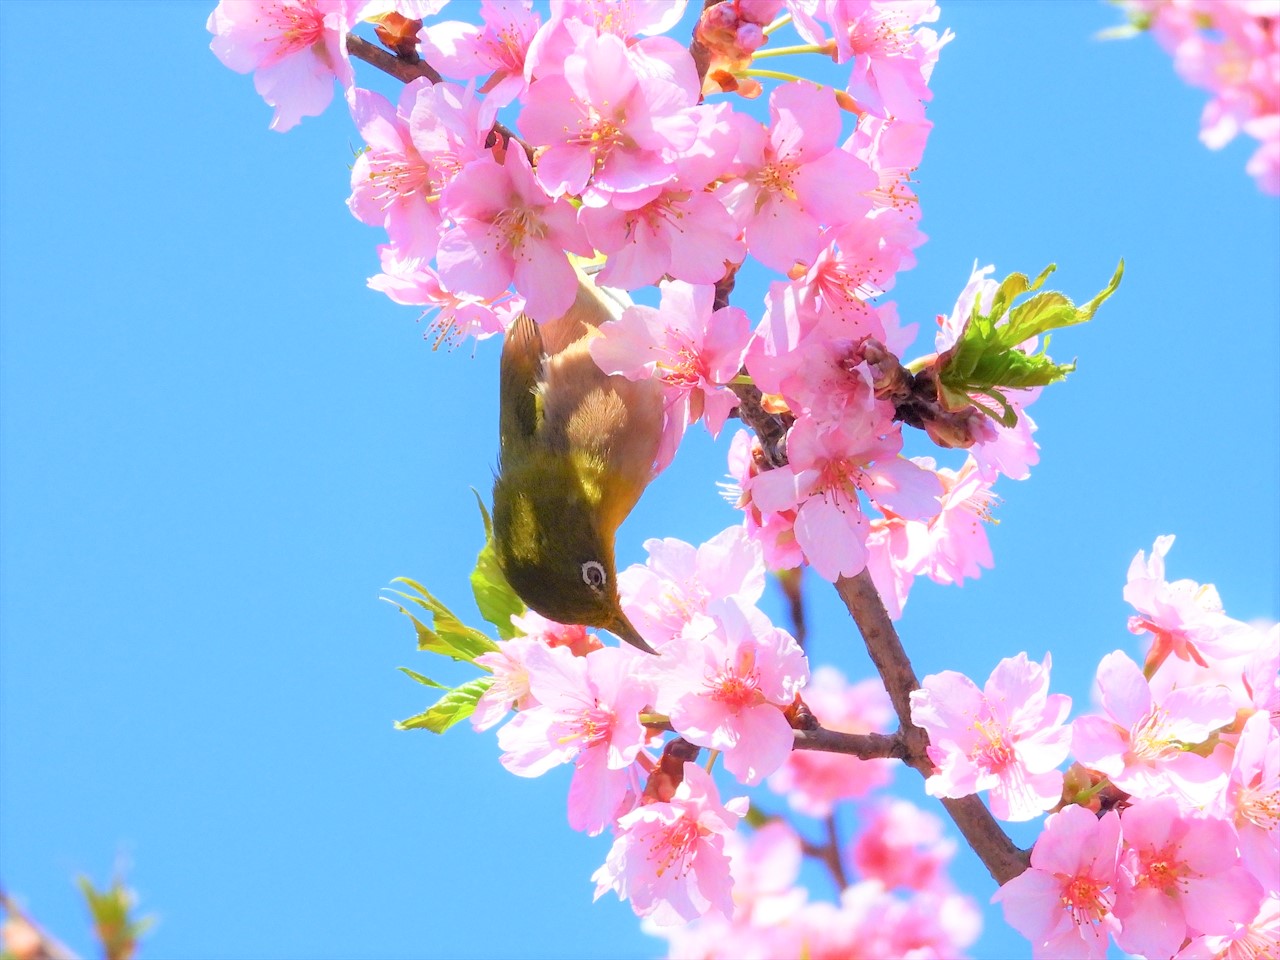 DSCN5235 (2)緋寒桜にメジロ２０２２年３月１５日AM９：５７